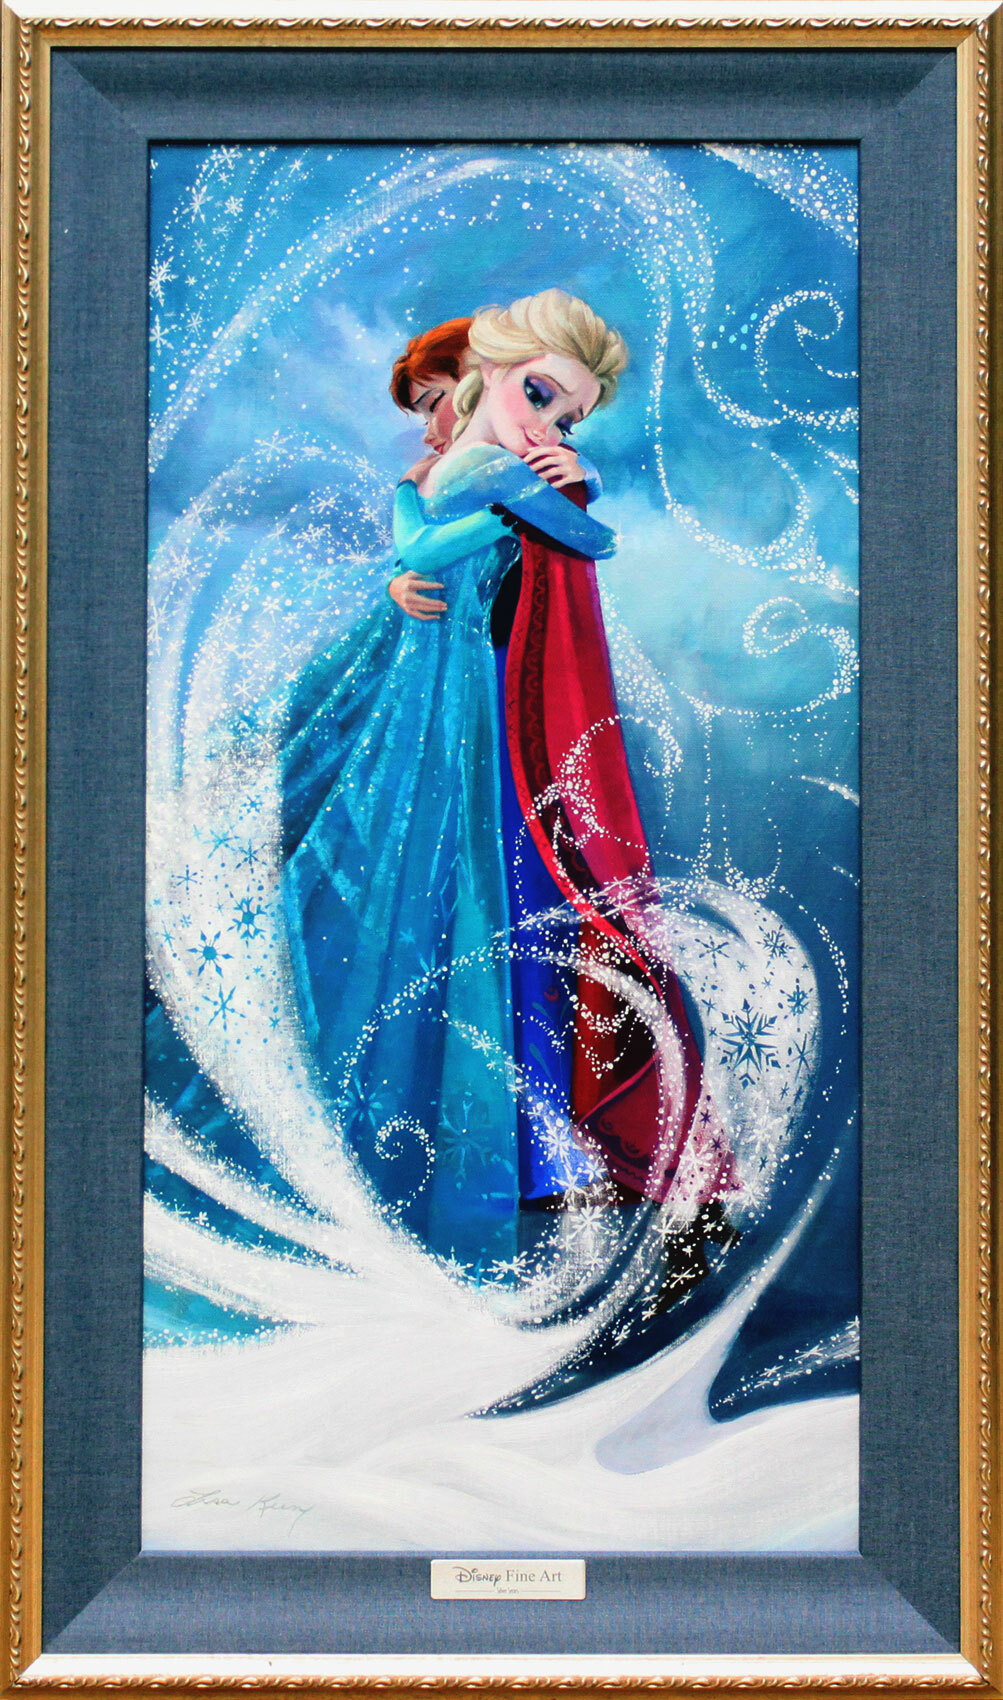 ディズニー絵画 アナと雪の女王 暖かい抱擁 作品証明書 展示用フック付 限定500部キャンバスジークレ ディズニー絵画 ポスター